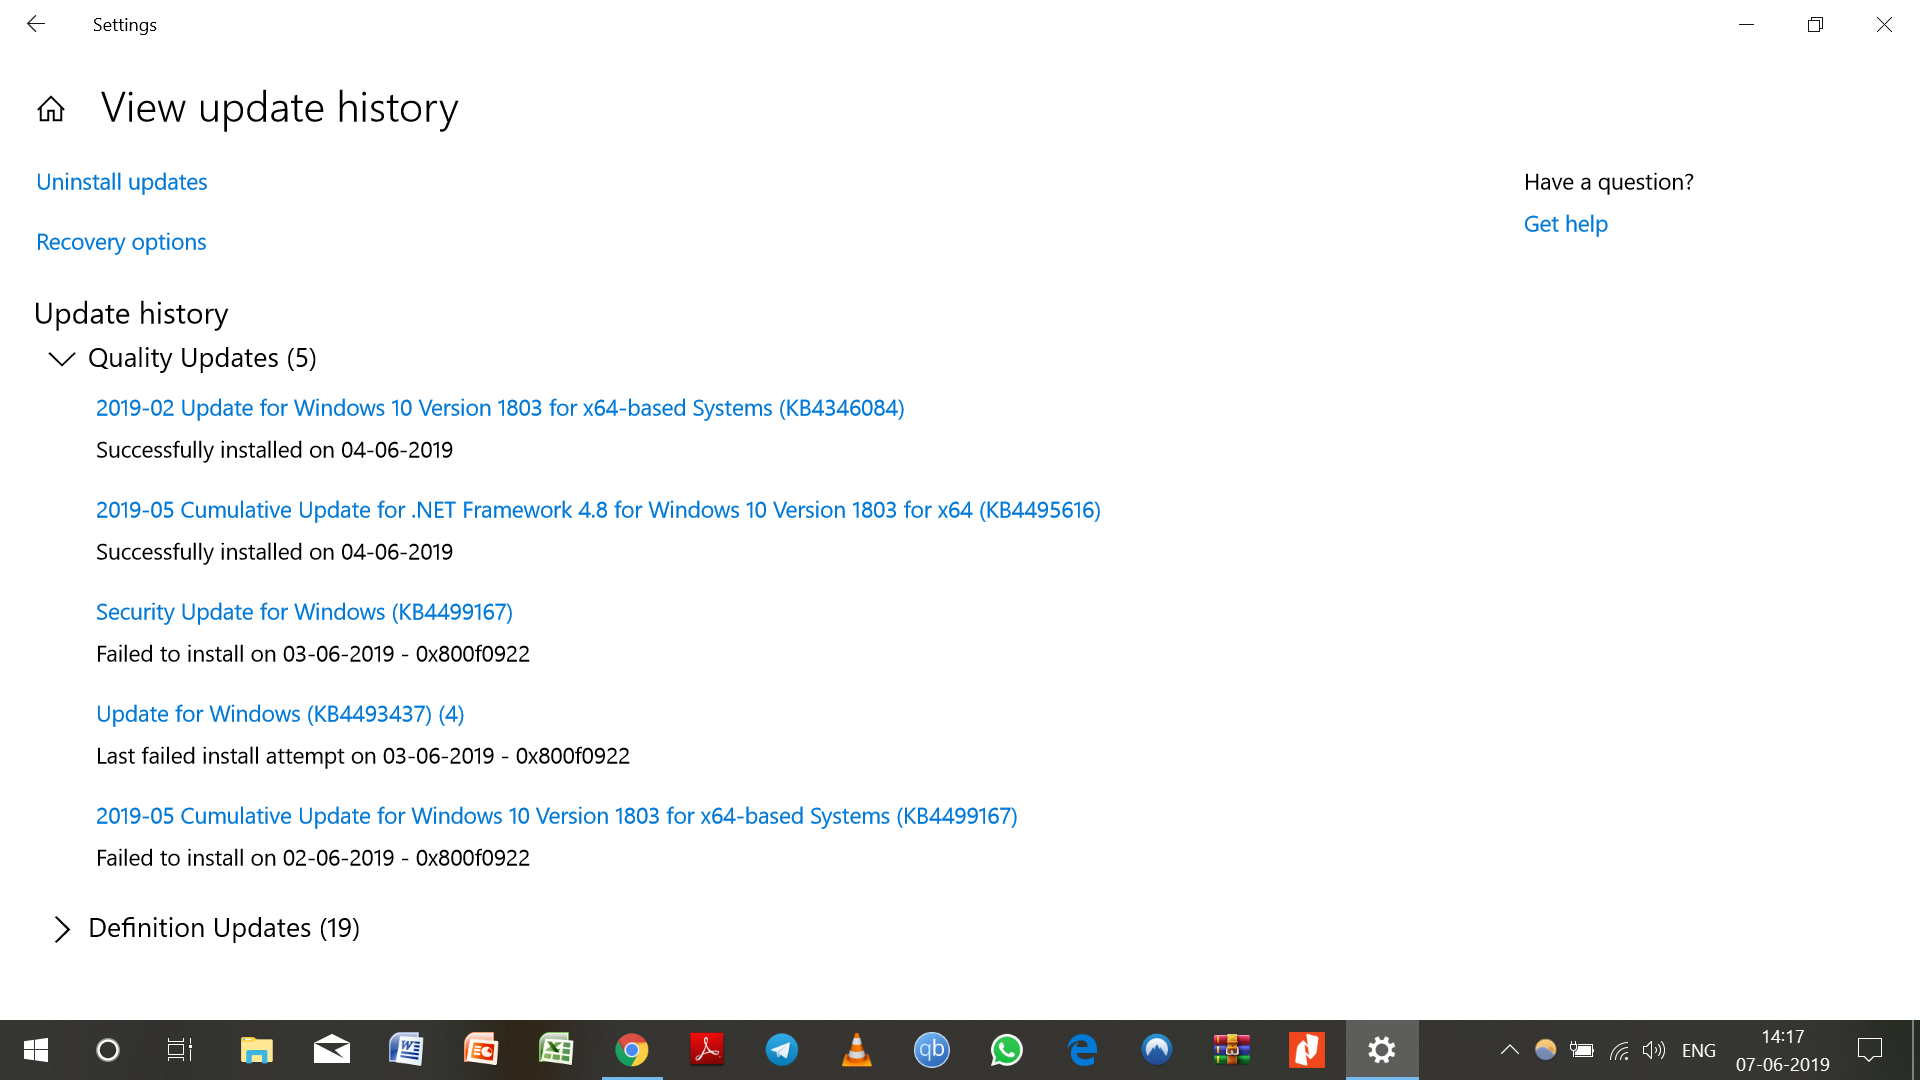 Windows 10 update error for KB4499167 ab341e0a-89da-4155-b2ab-9f732439abf1?upload=true.png